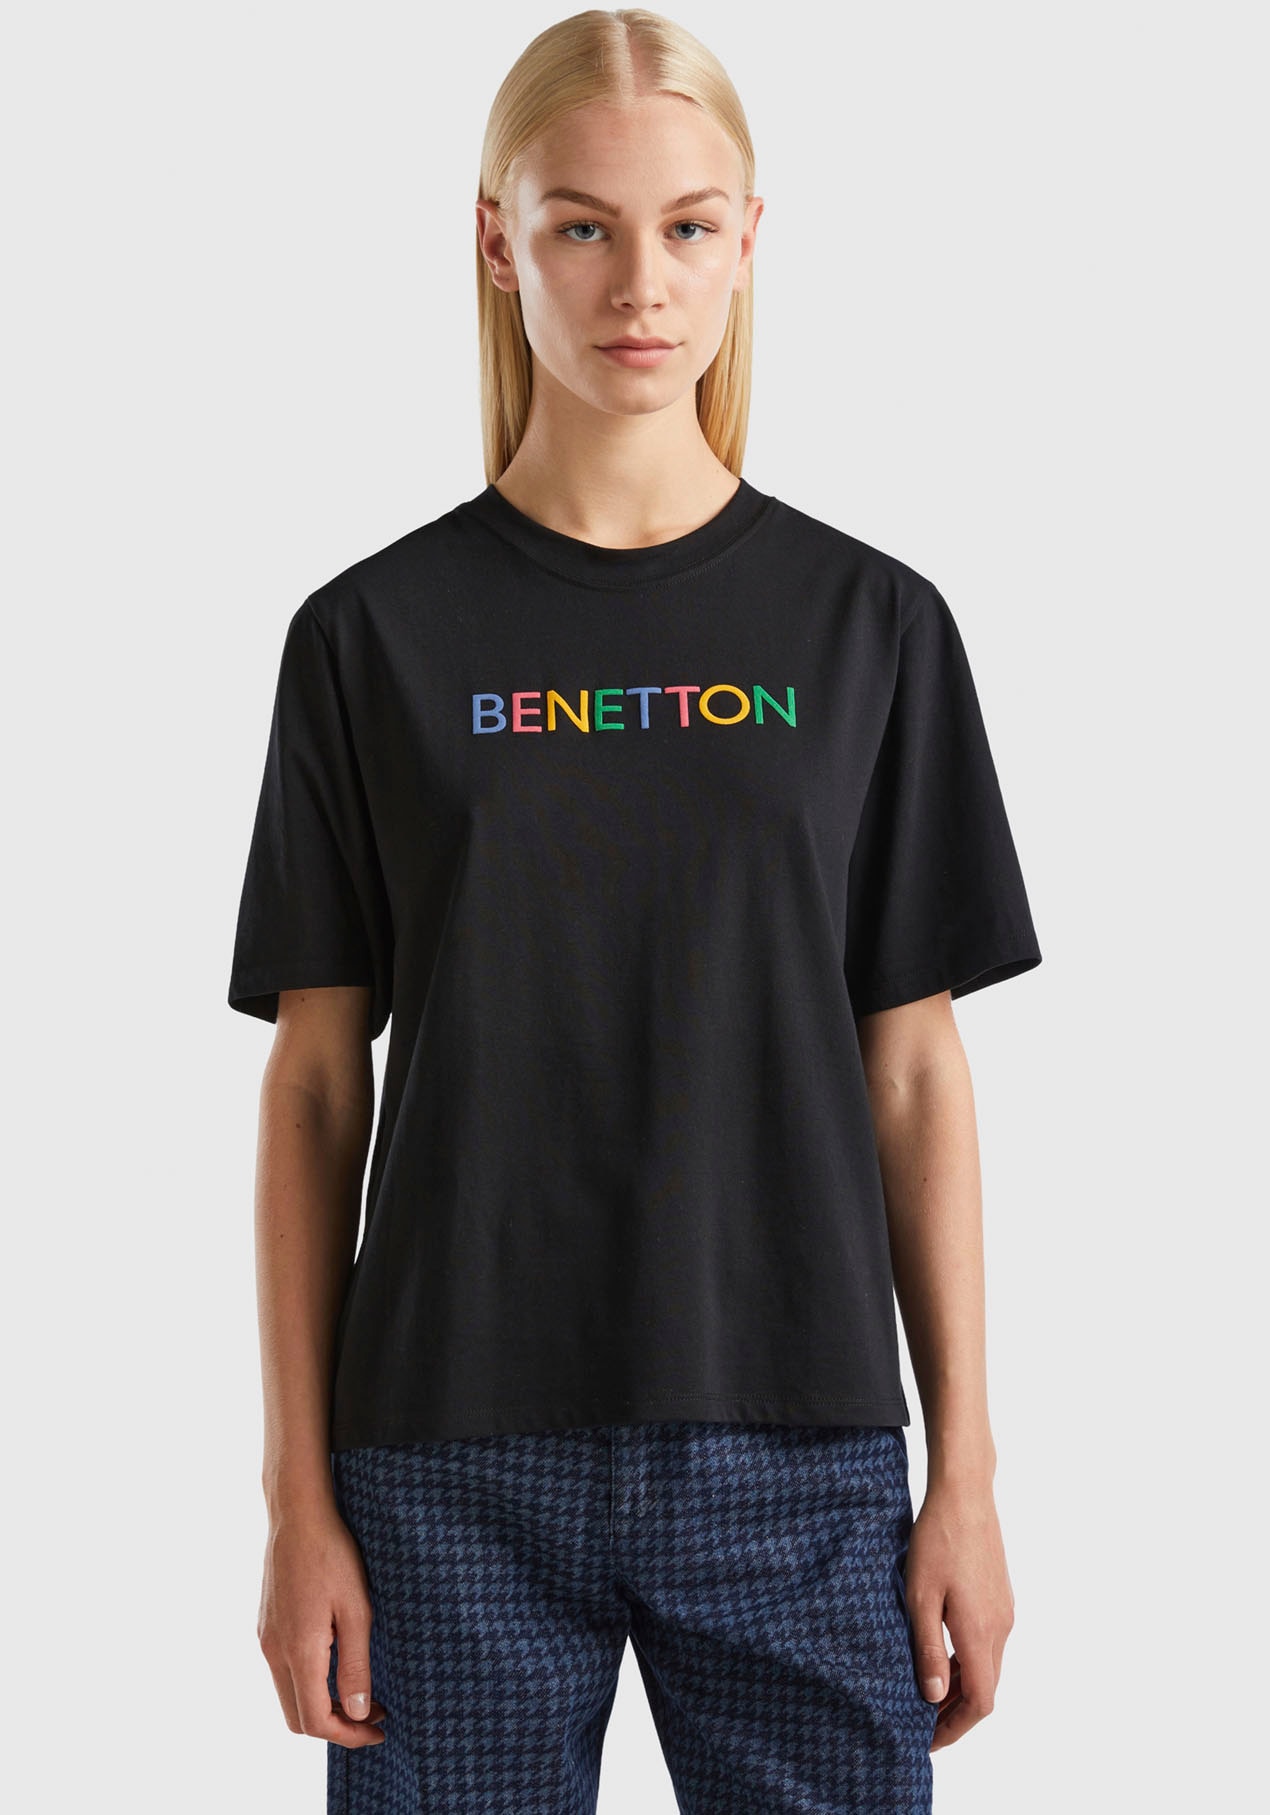 United Colors Label-Schriftzug of vorne T-Shirt, Benetton bei mit ♕